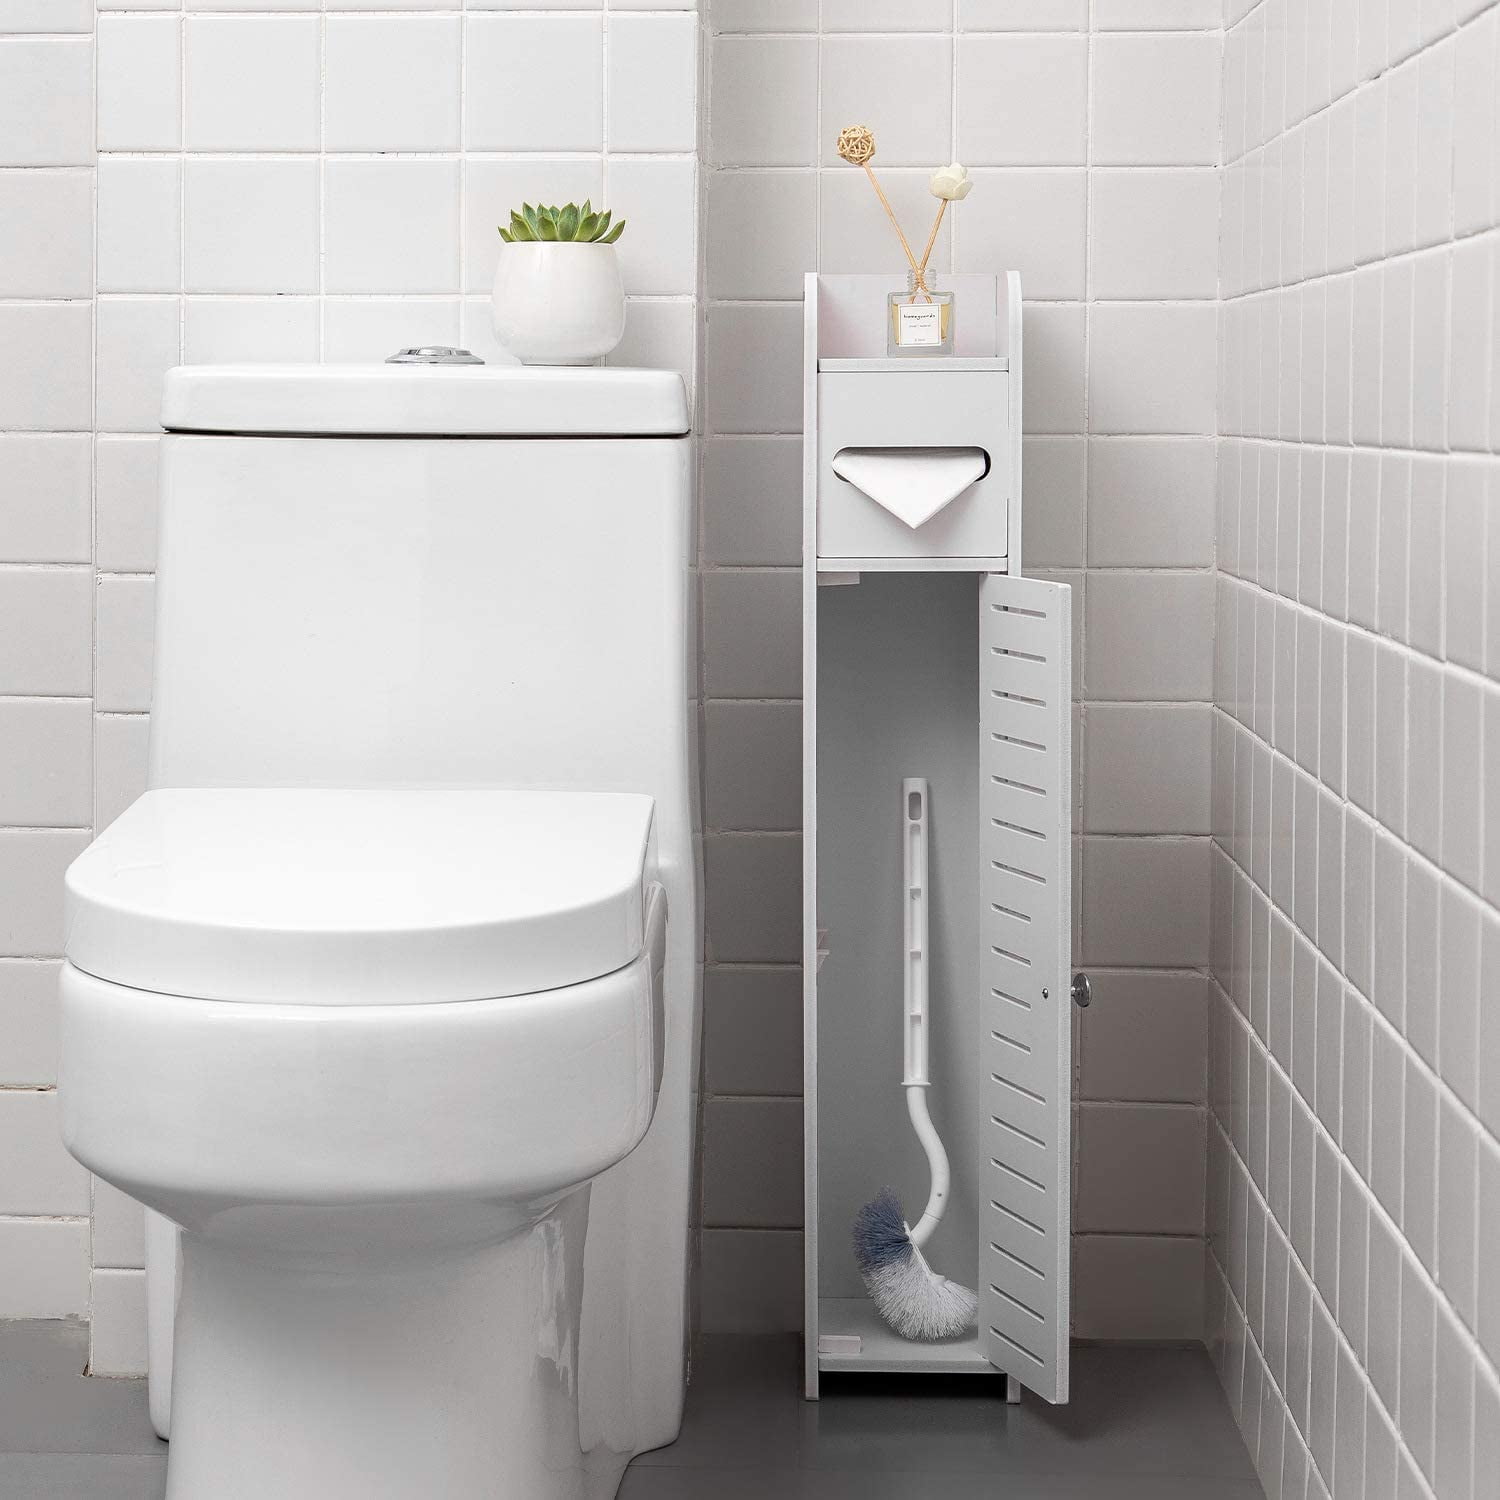 Details about   Simple Bathroom Corner Shelf Cabinet Storage Organizer Toilet Paper Holder White 